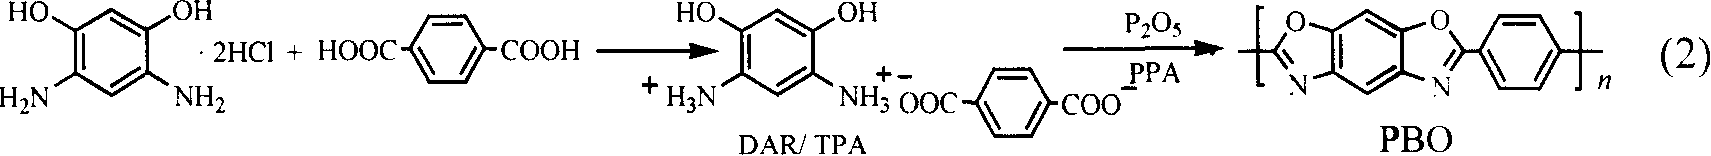 Method for synthesizing 5-amide-6-hydroxy-2-(4-carboxylphenyl)benzoxazole